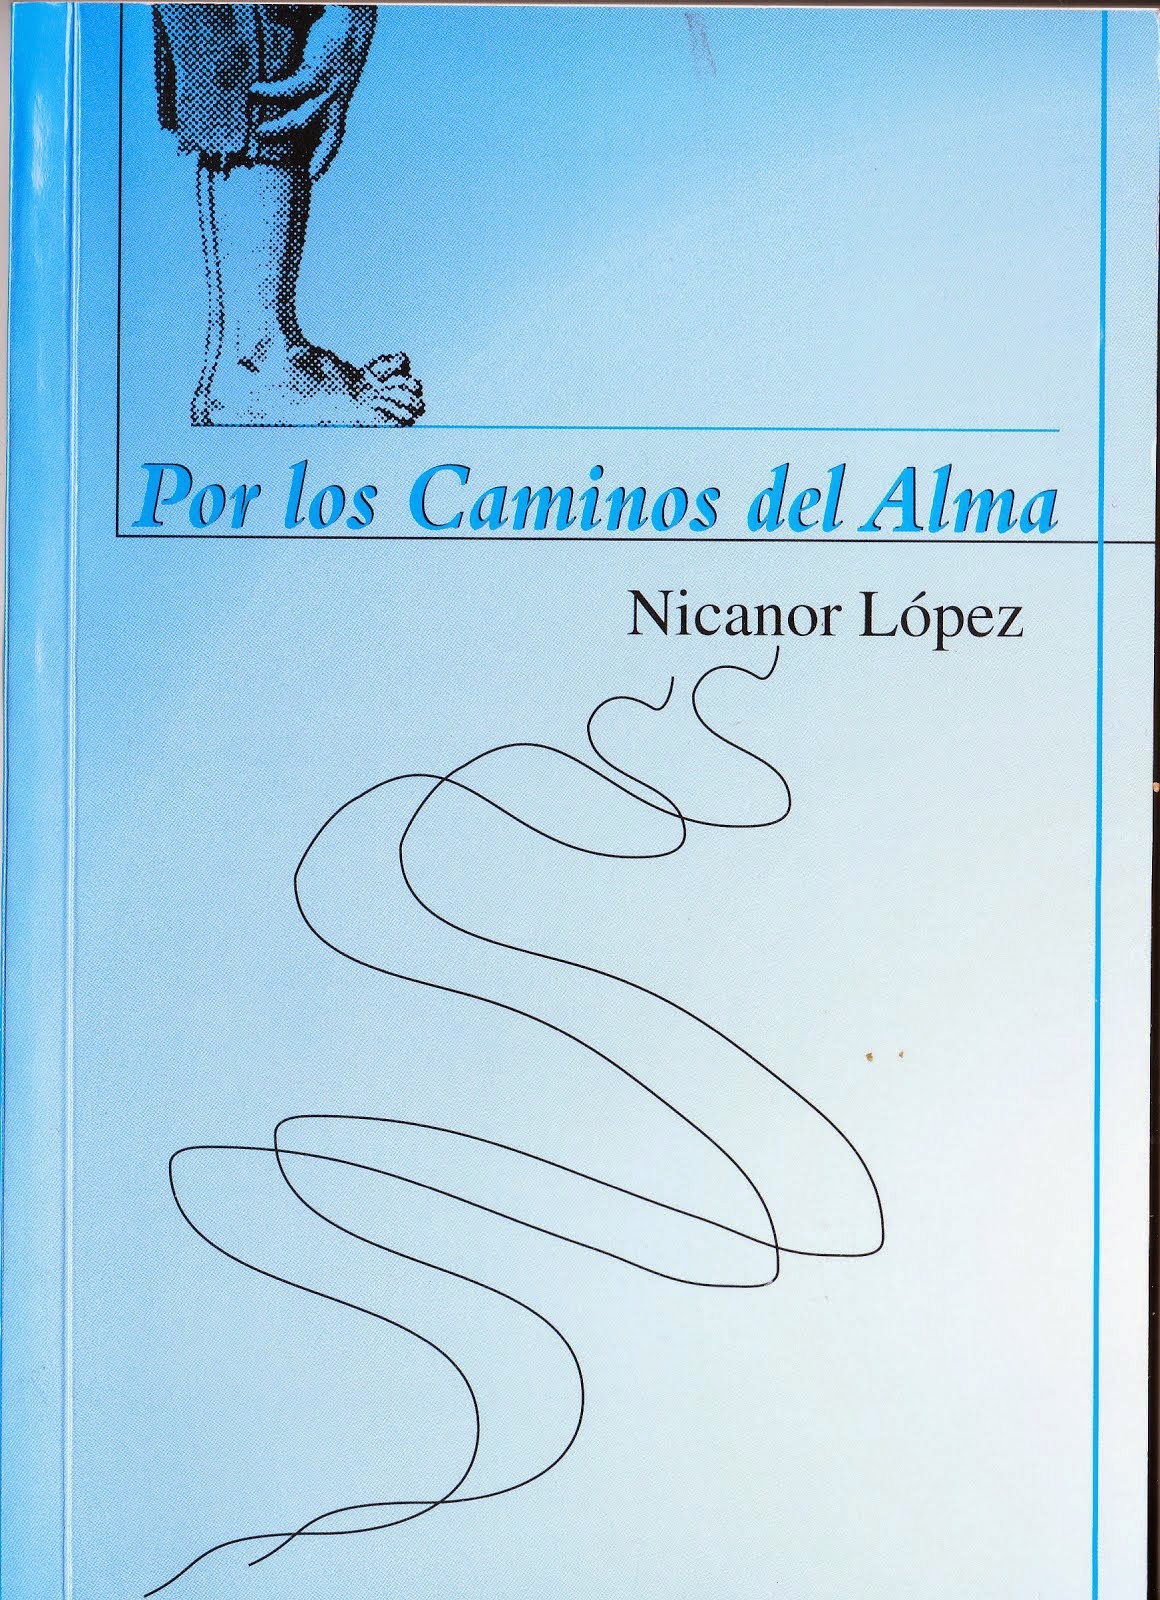 Libros publicados por Nicanor López